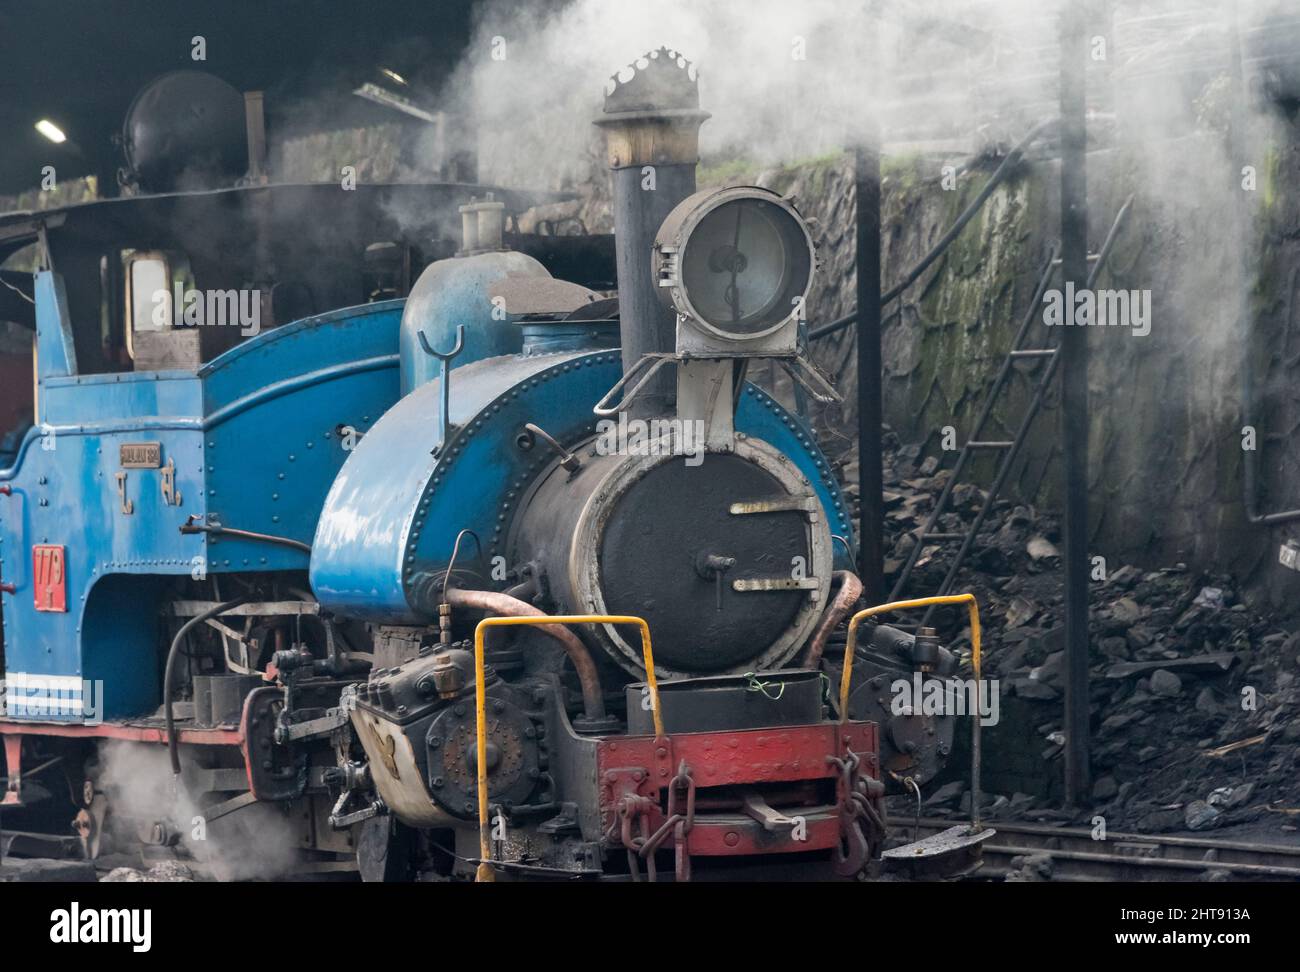 Tren de vapor en el ferrocarril del Himalaya de Darjeeling (también conocido como DHR o tren de juguete) pasando por la ciudad, Darjeeling, Bengala Occidental, India Foto de stock